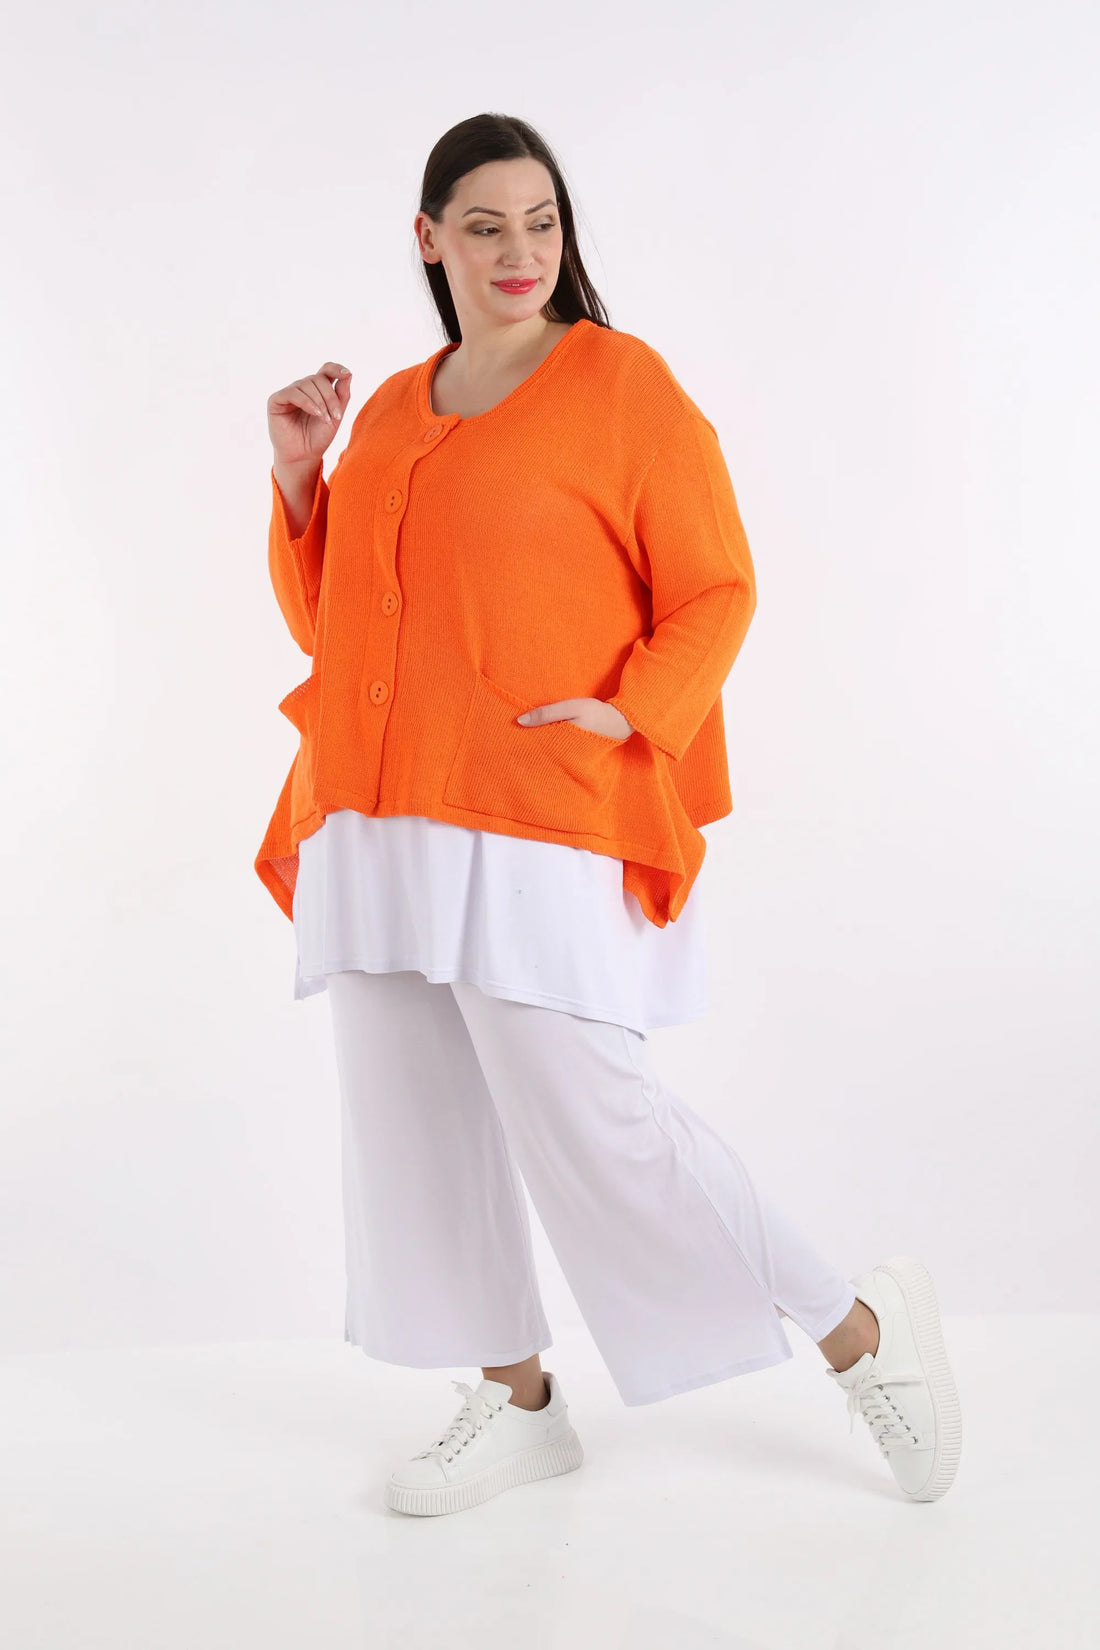 Jacke von AKH Fashion aus reiner Baumwolle, 1110.00118